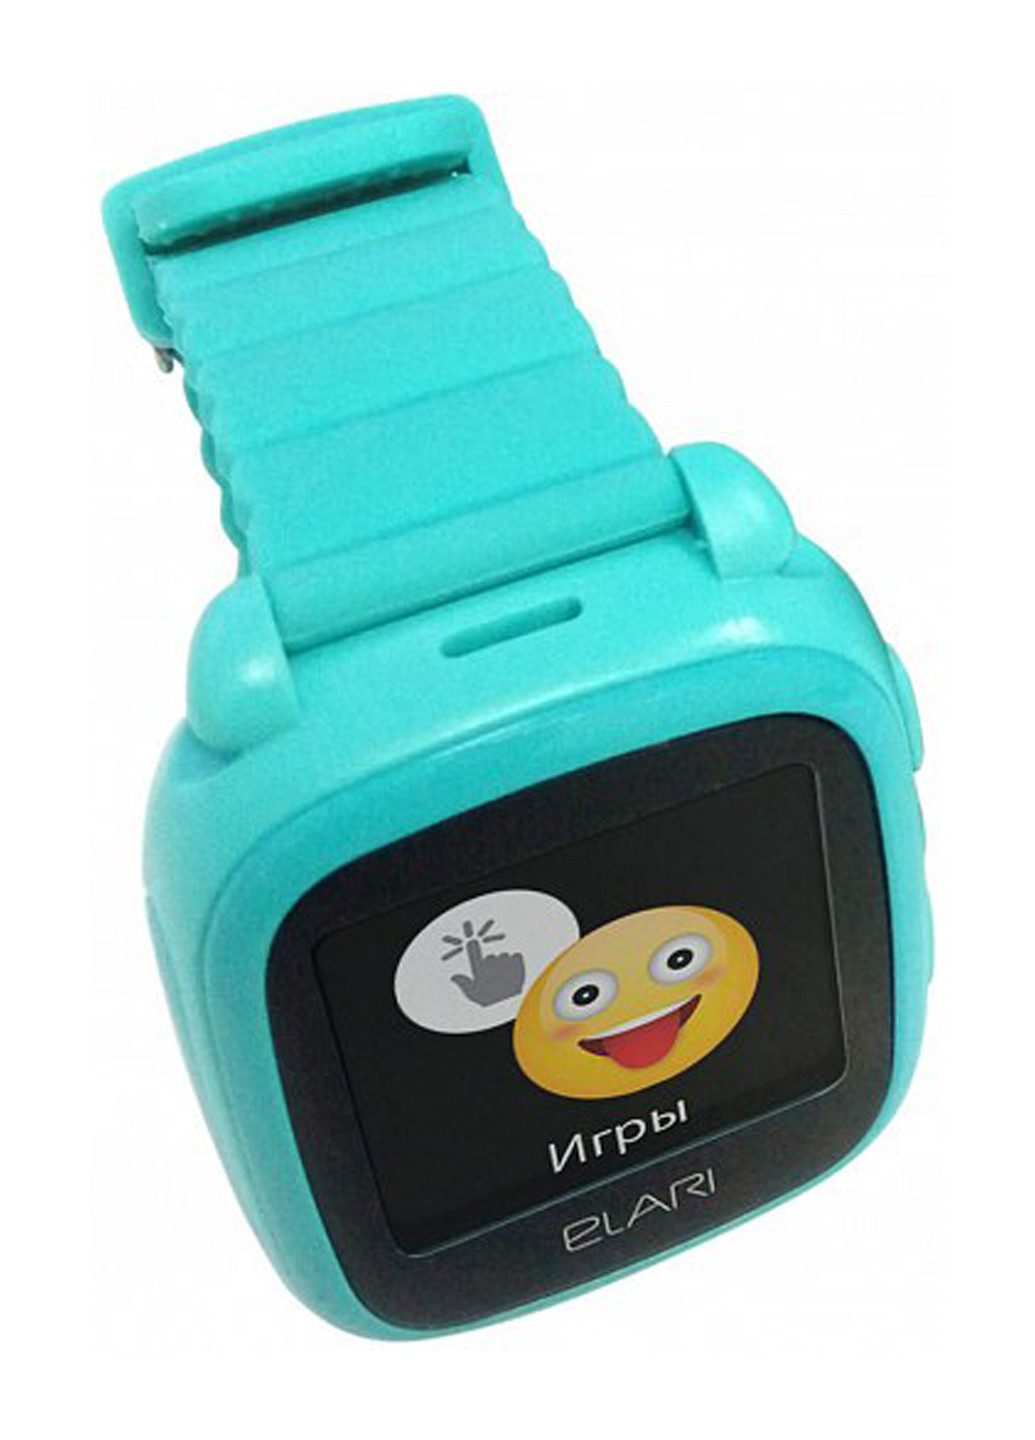 Дитячі смарт-годинник KidPhone 2 Green з GPS-трекером (KP-2G) Elari elari kidphone 2 green (kp-2g) (132853829)